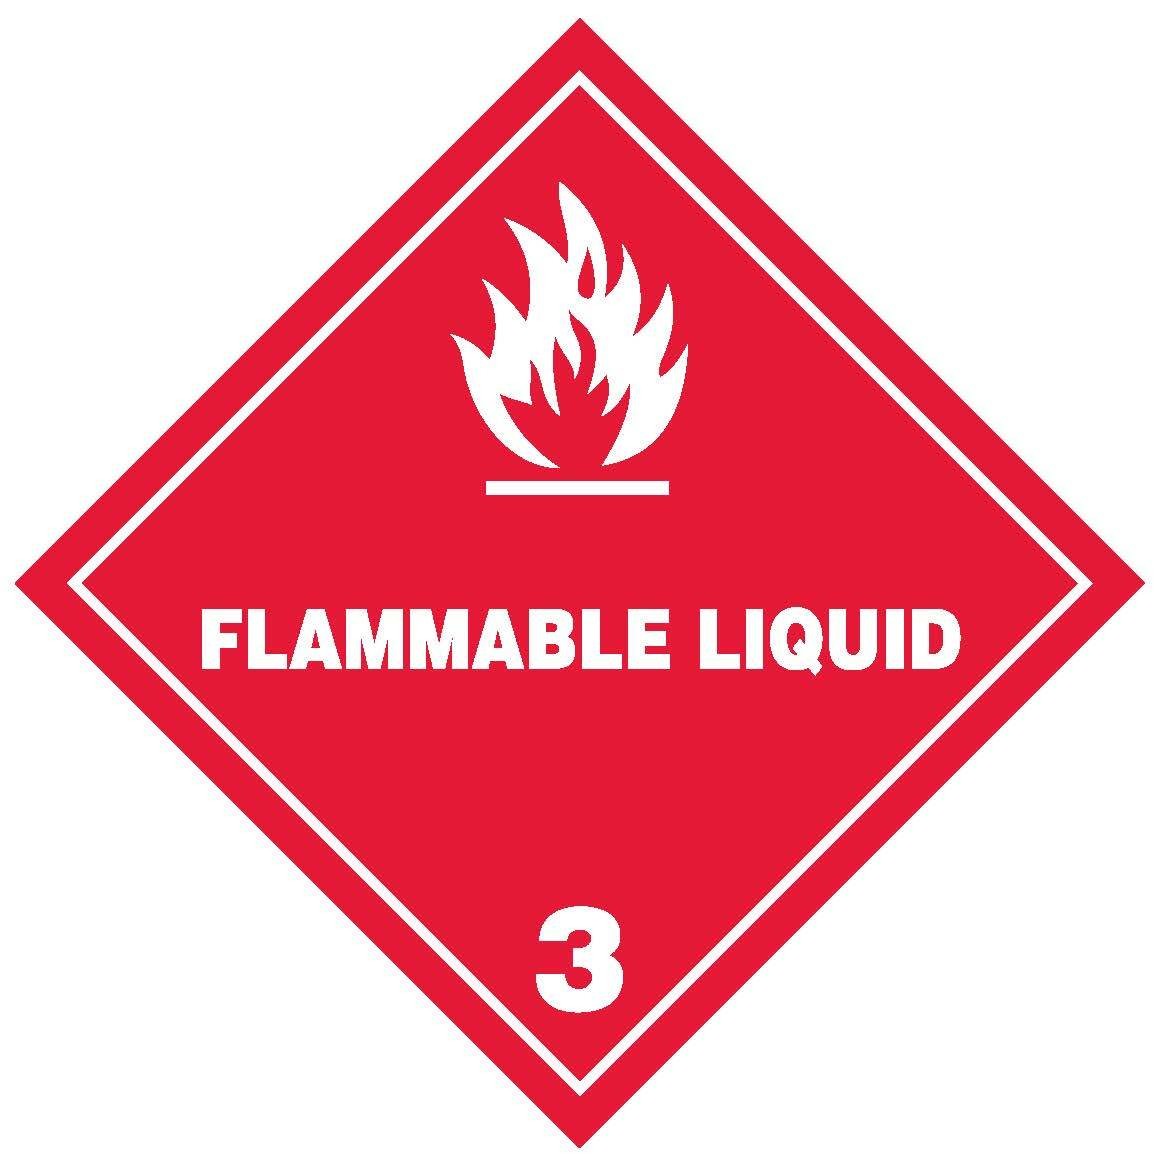 Flammable Liquid Class 3